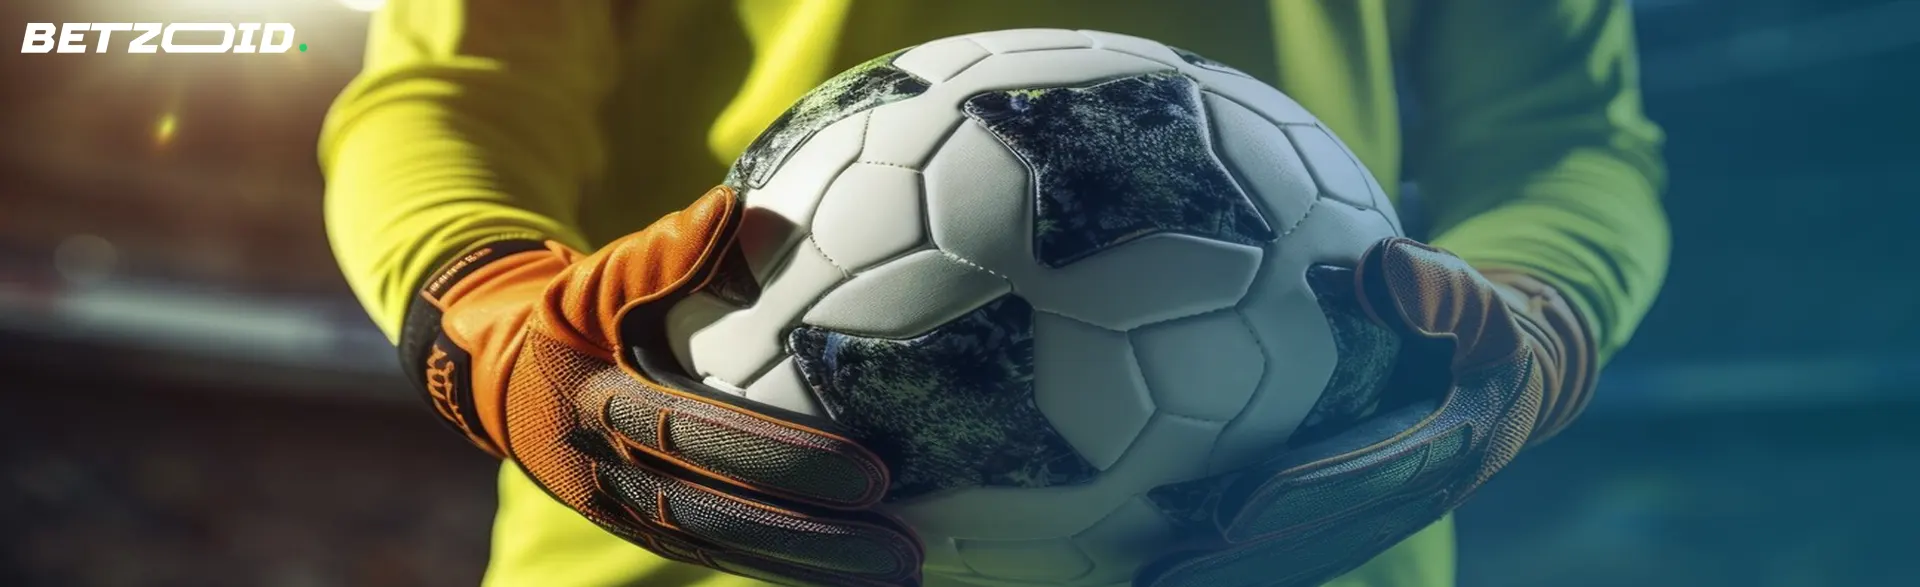 Un portero en agarra un balón de fútbol, simbolizando las casas de apuestas de fútbol.